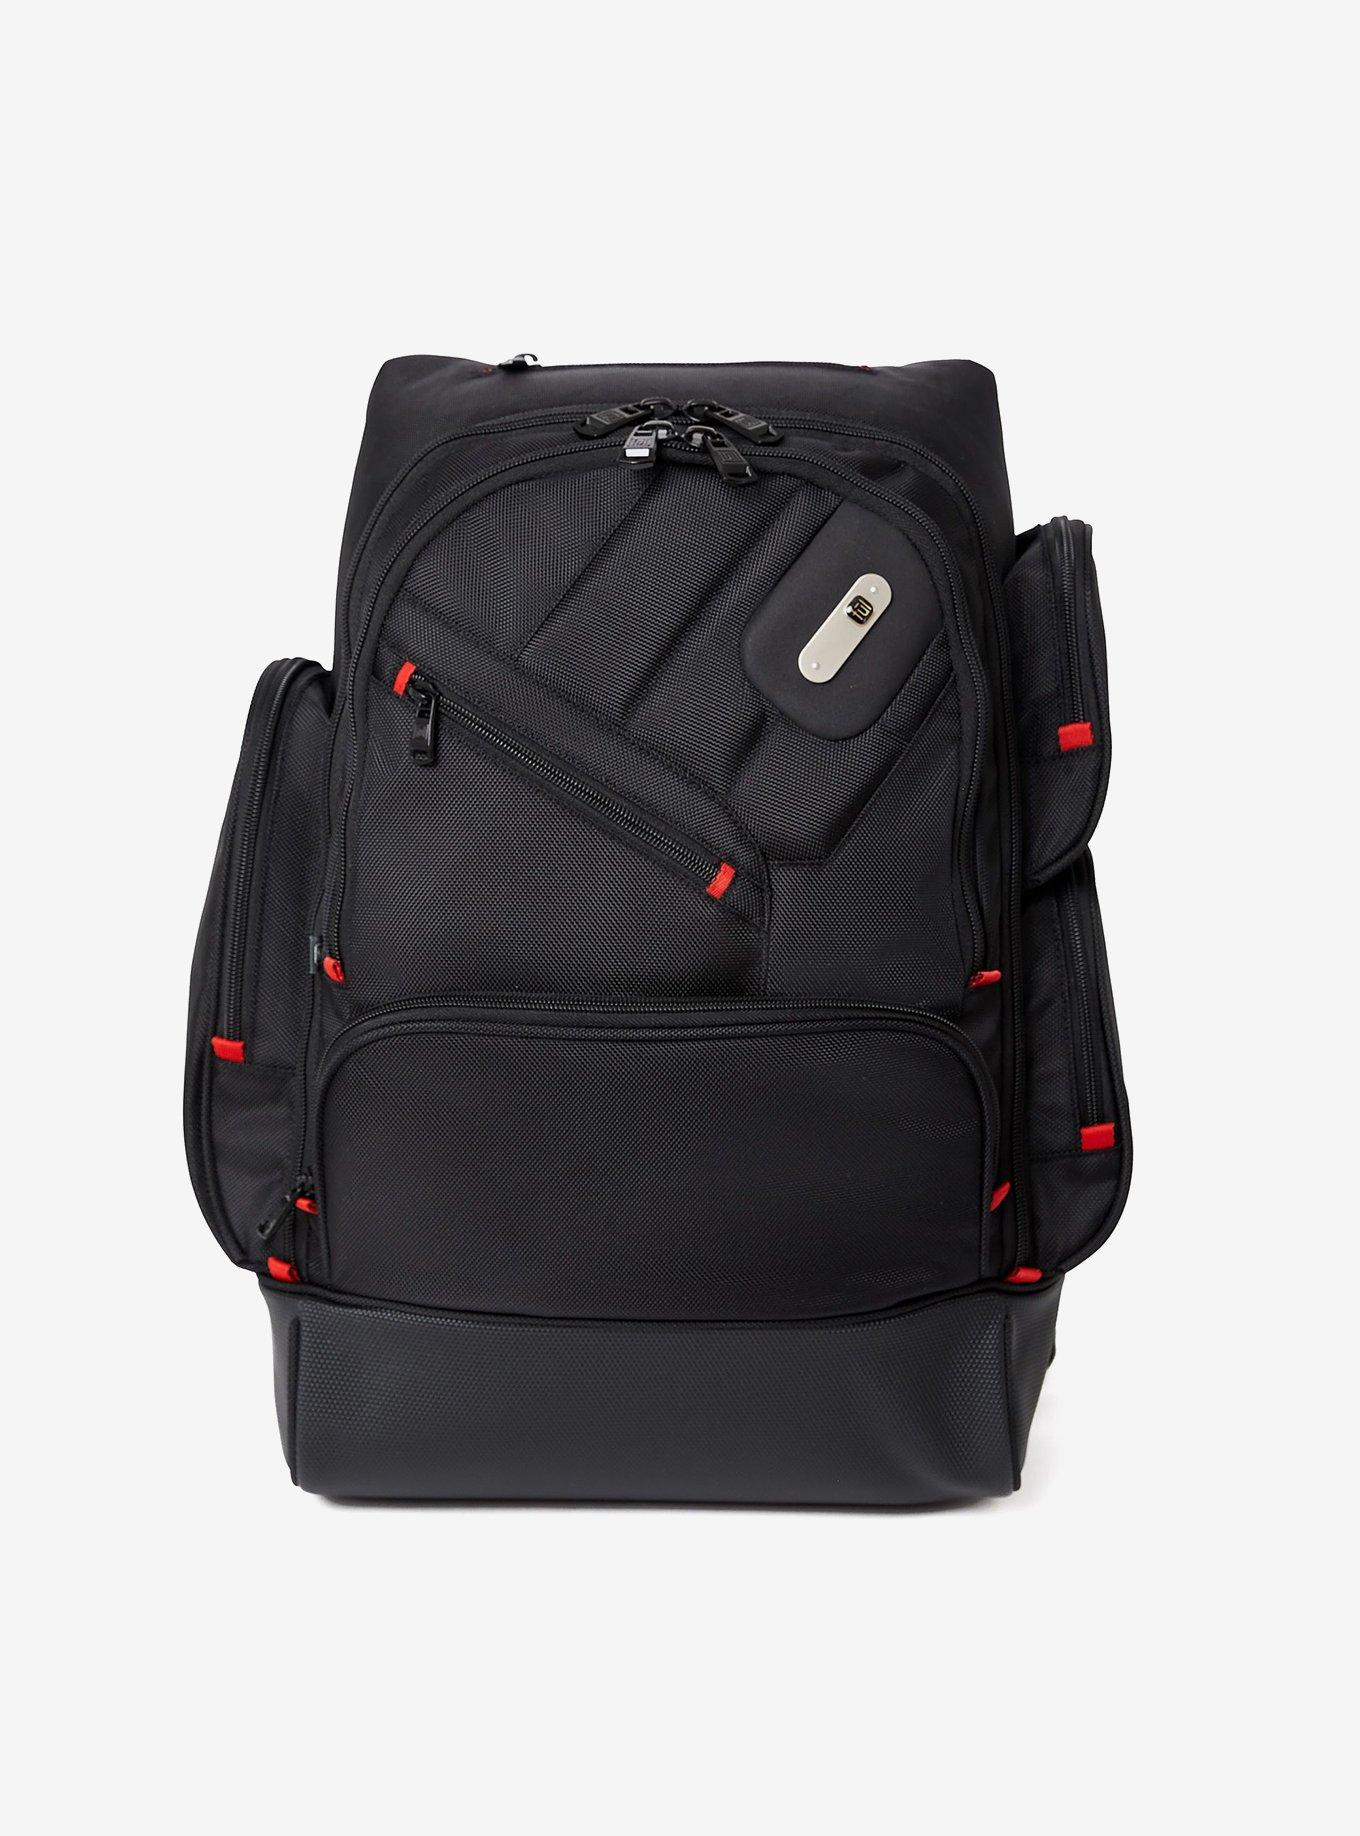 FUL Refugee Black Laptop Backpack, , hi-res